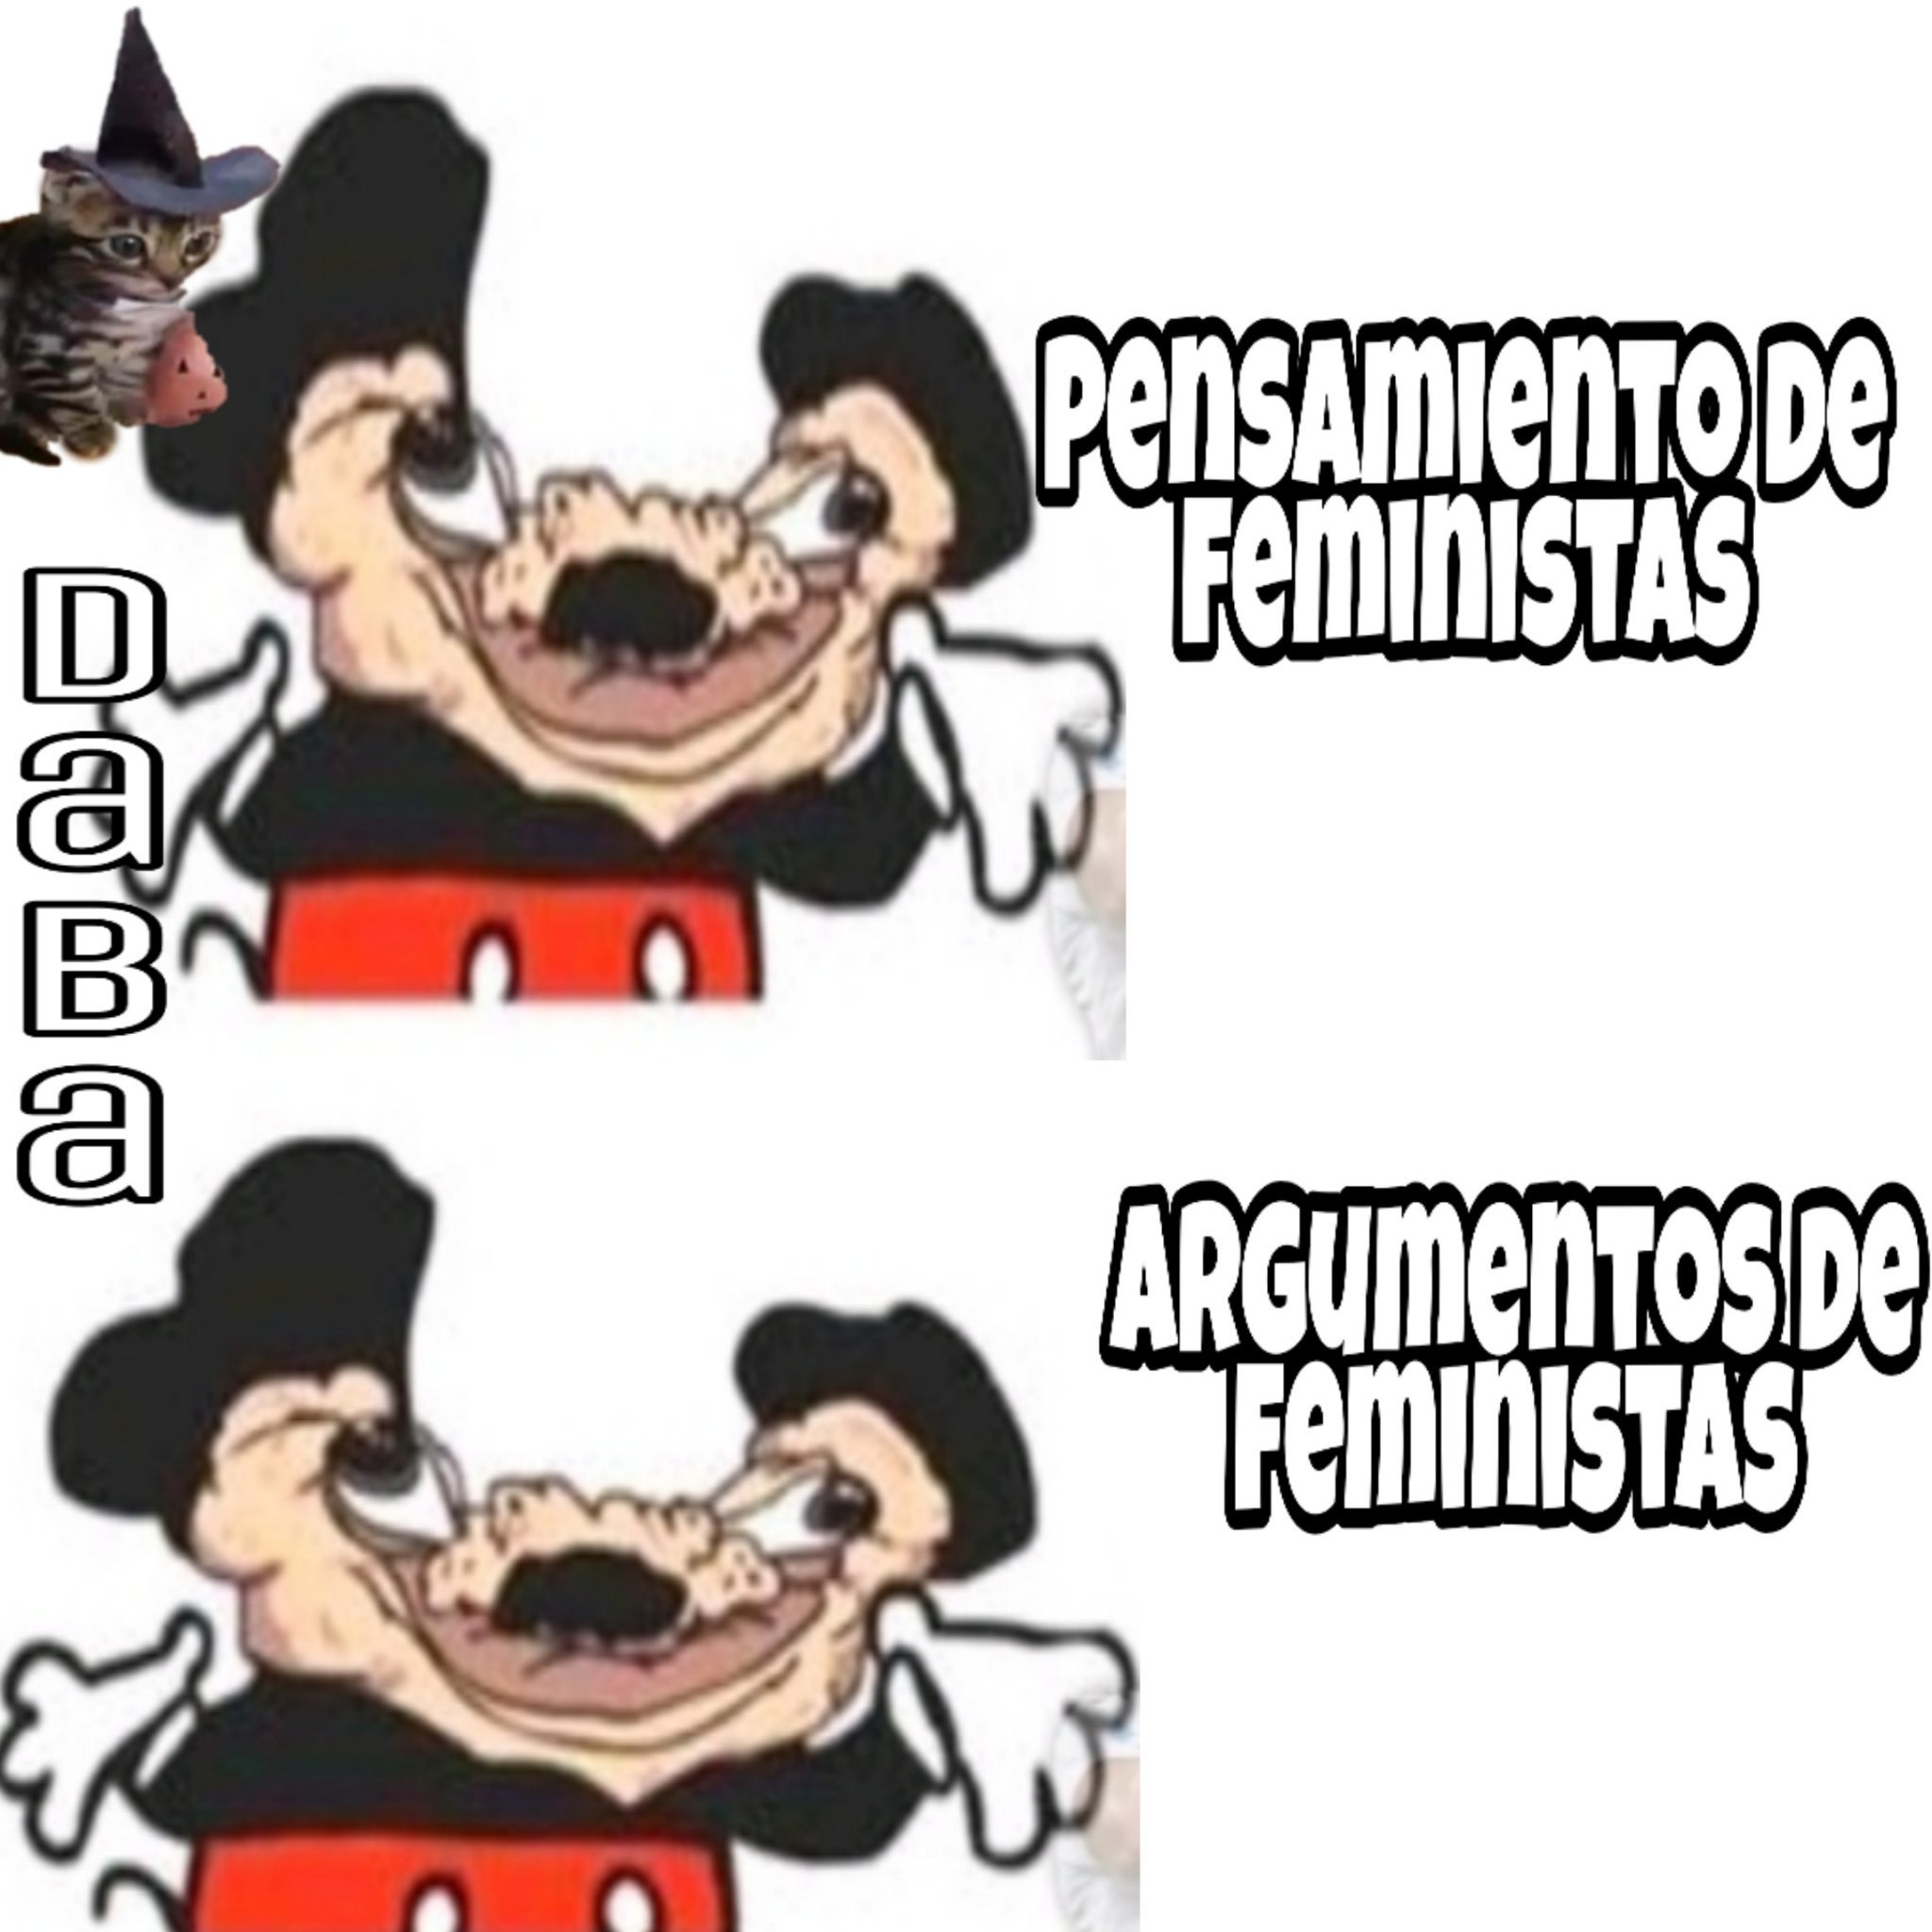 Feministas. - meme